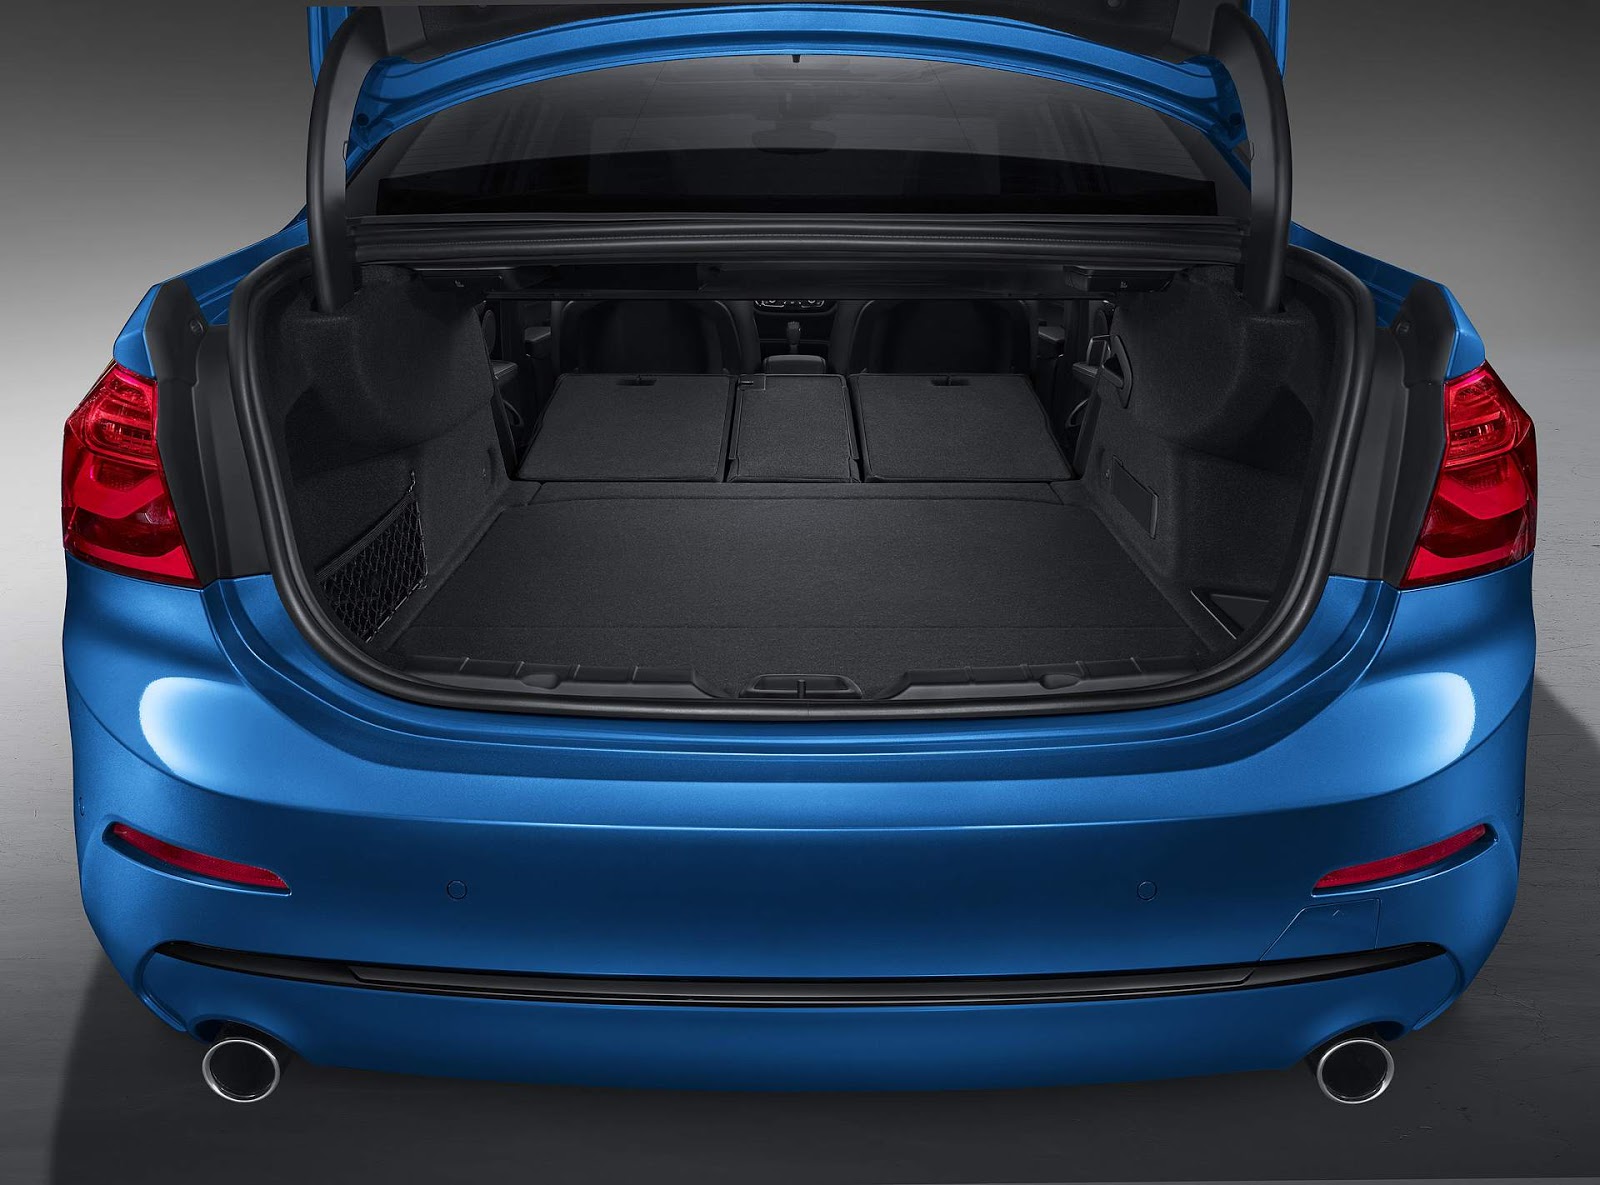 Porta-malas do BMW Série 1 Sedan tem capacidade para 425 litros, igual à do A3